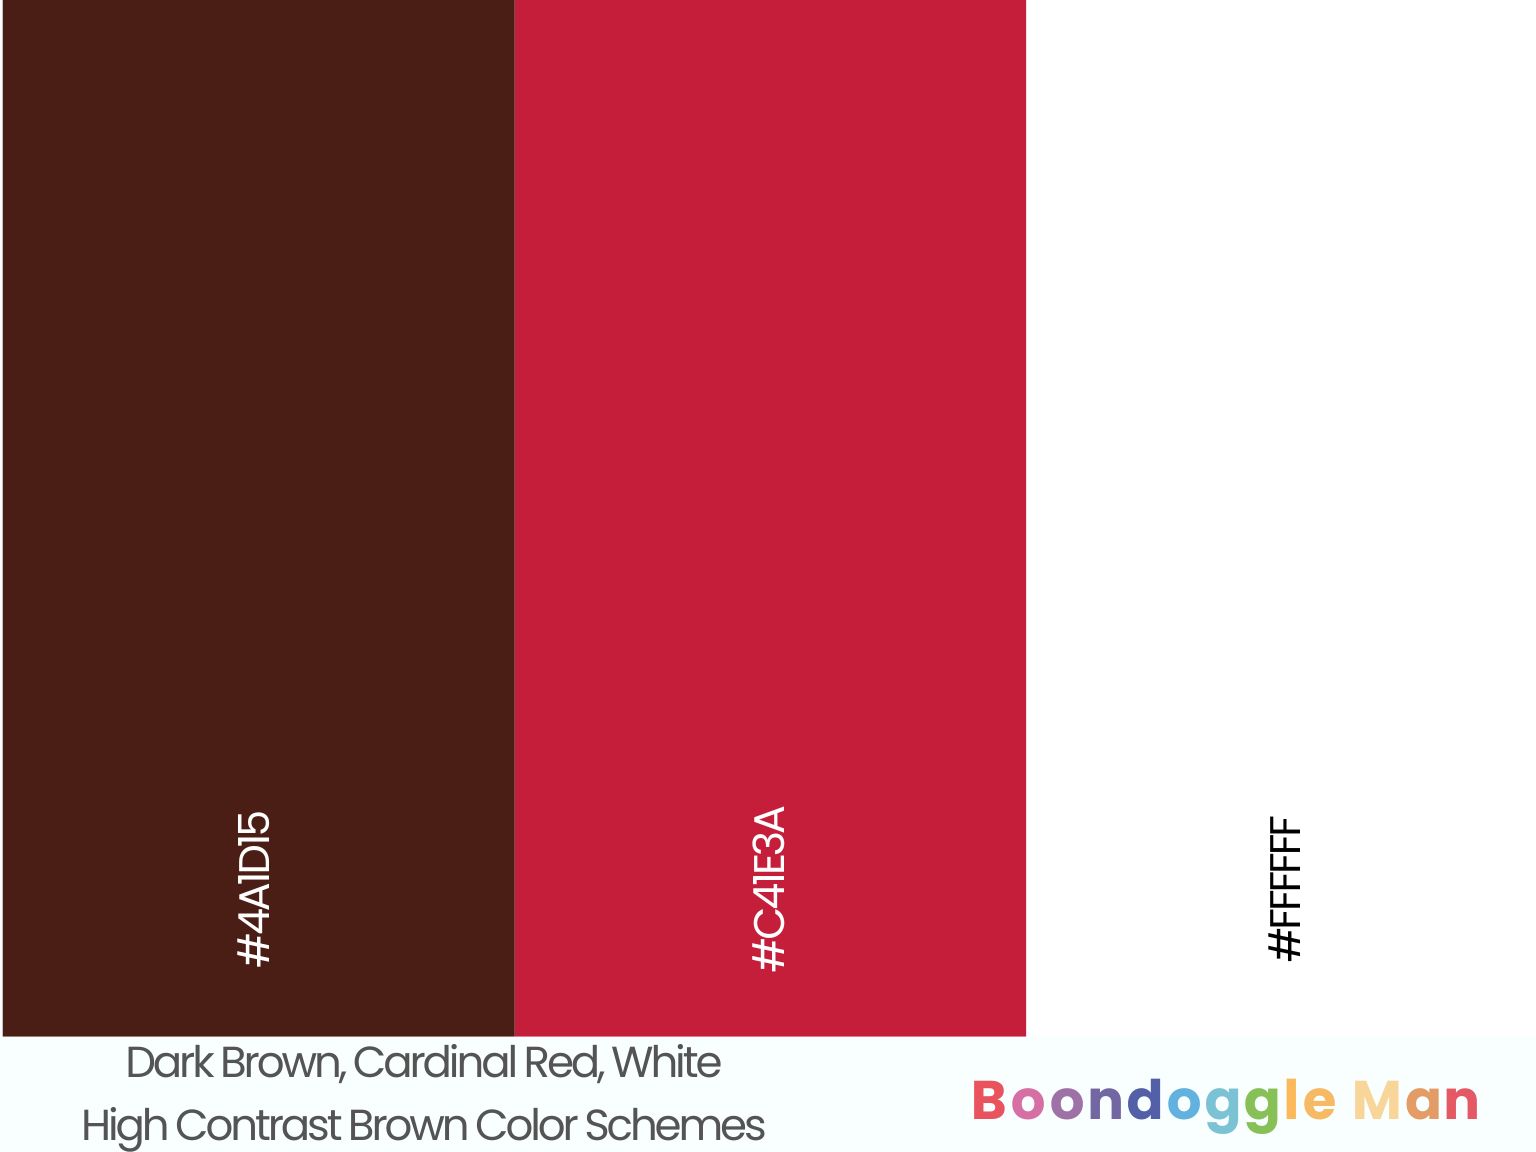 Dark Brown, Cardinal Red, White